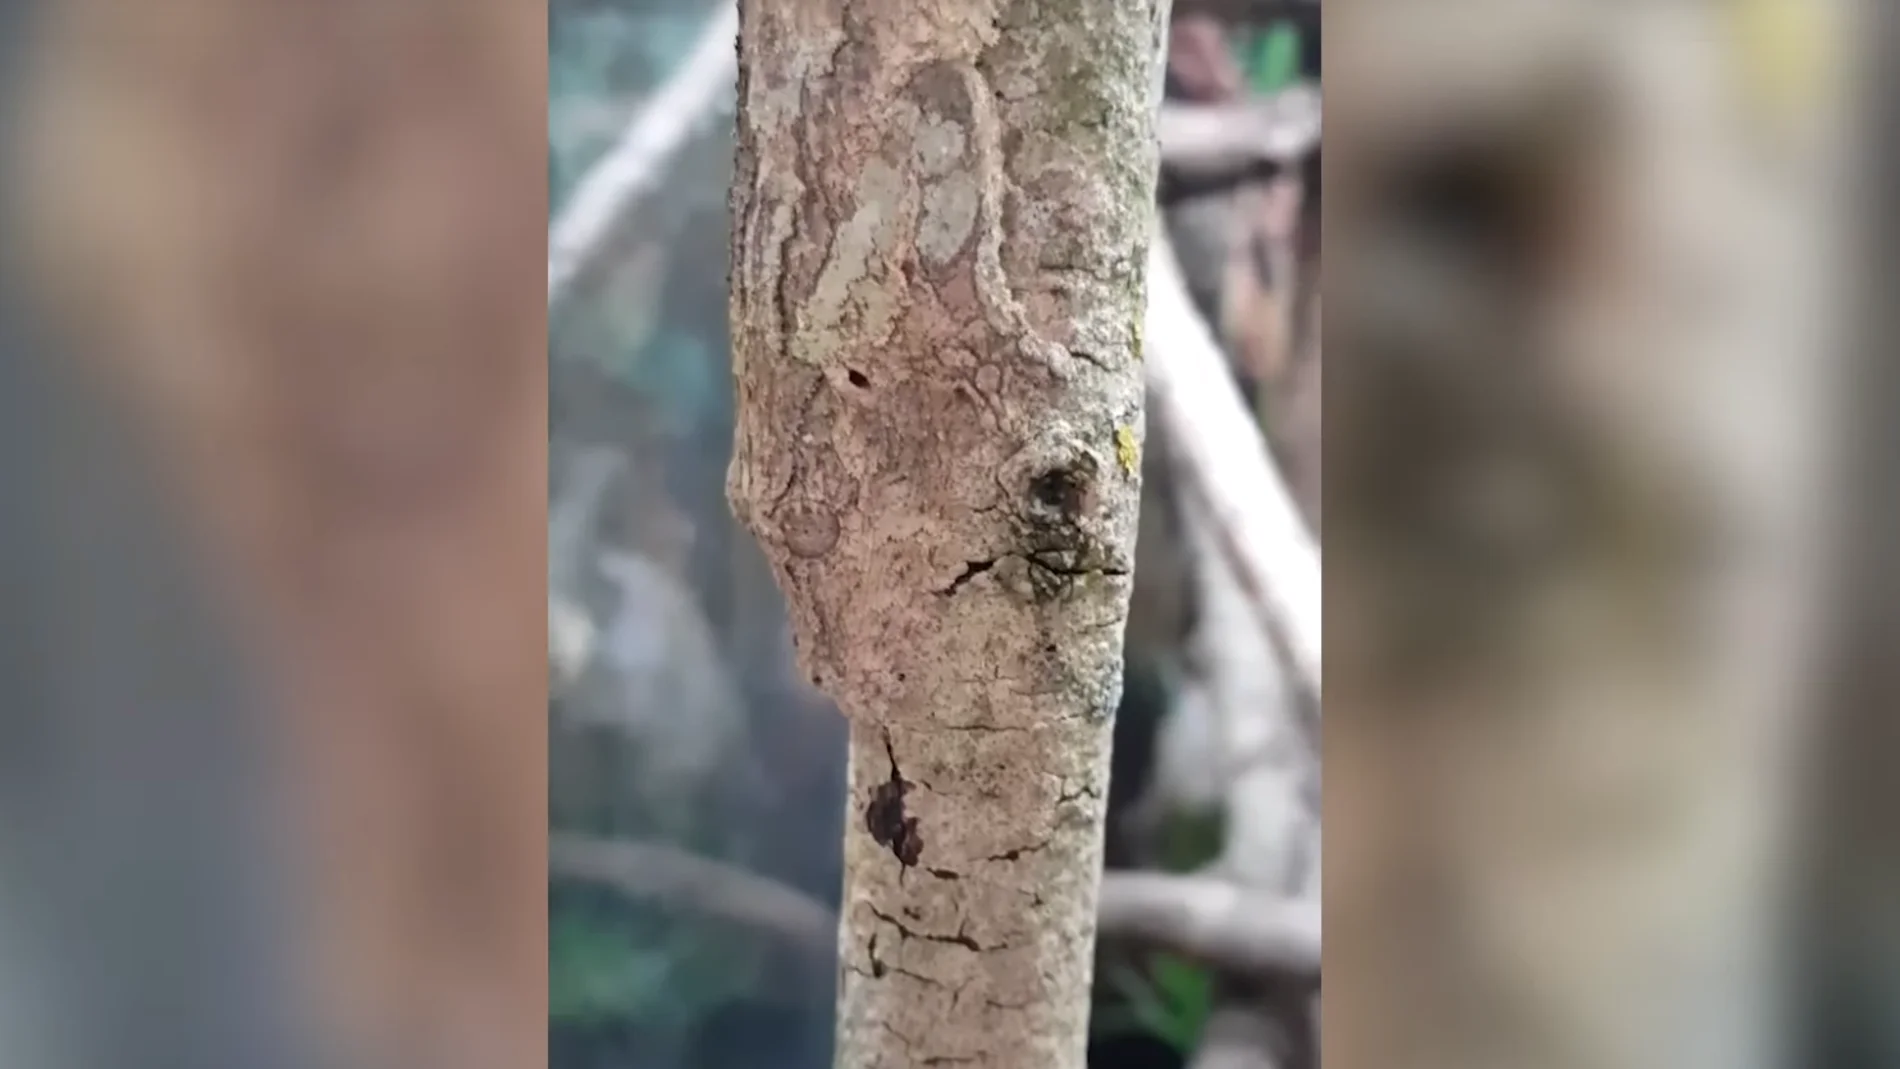 Un gecko camuflado sobre el tronco de un árbol.